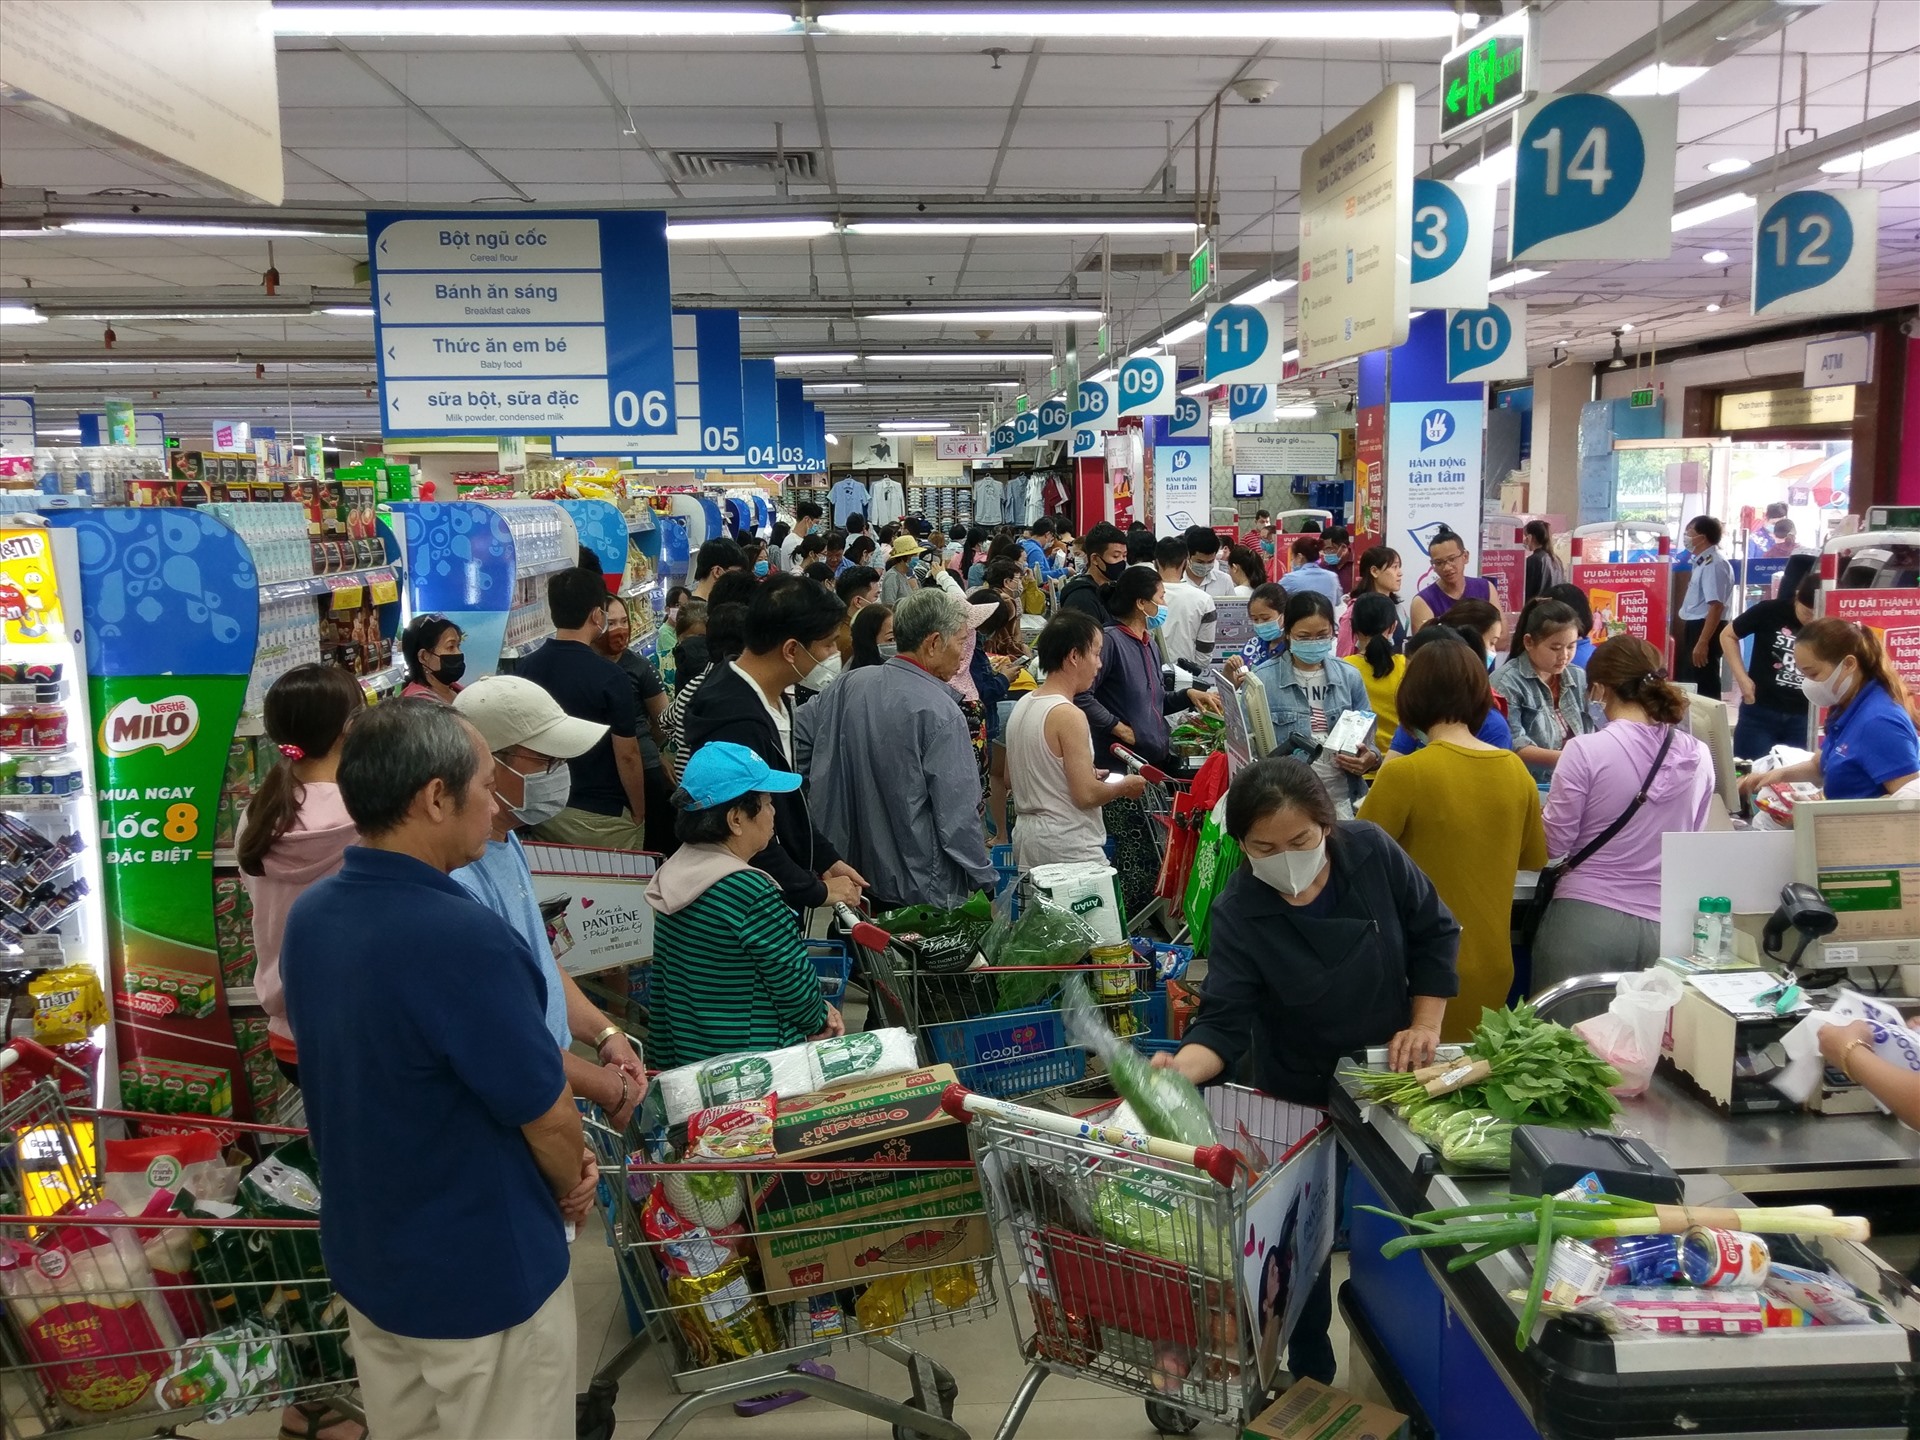 Hàng dài người xếp hàng tính tiền ở các siêu thị vào cuối tuần. Sở Công thương TPHCM kêu gọi người dân không nên tích trữ hàng hóa trong thời điểm hiện nay, gây tâm lý hoang mang, xáo trộn thị trường.